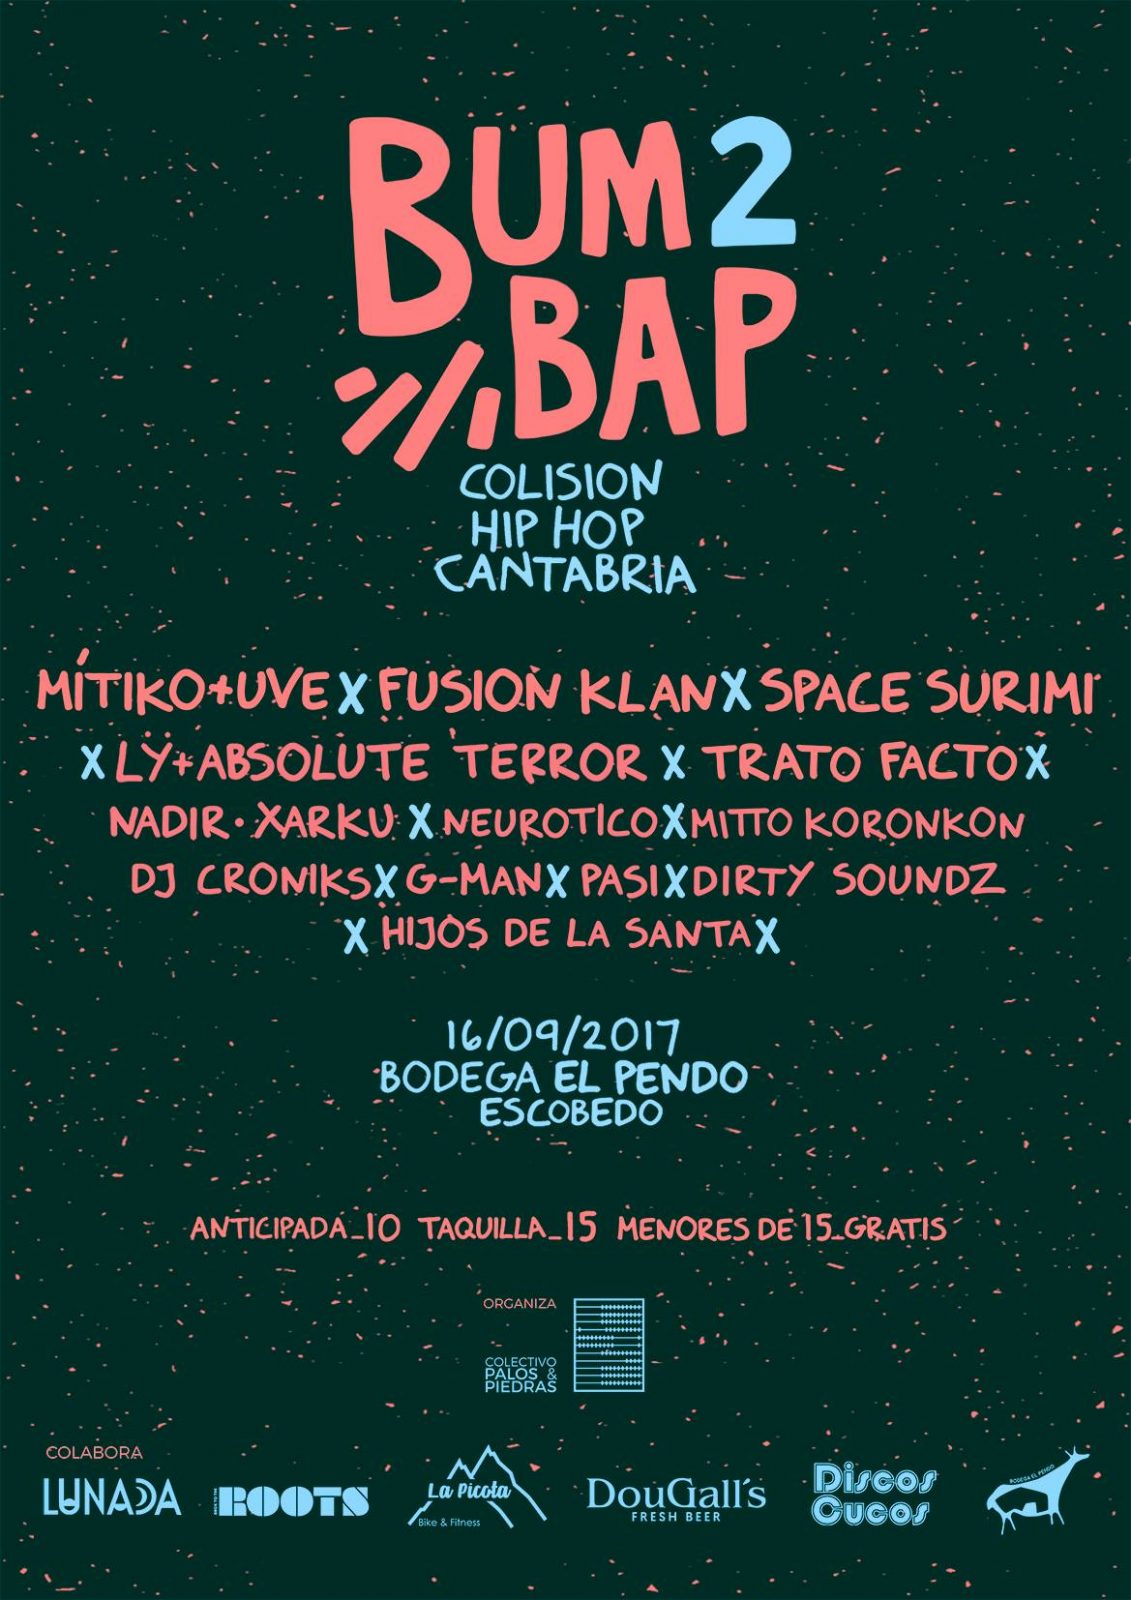 Festival Bum Bap 2 - Colisión Hip-Hop Cantabria